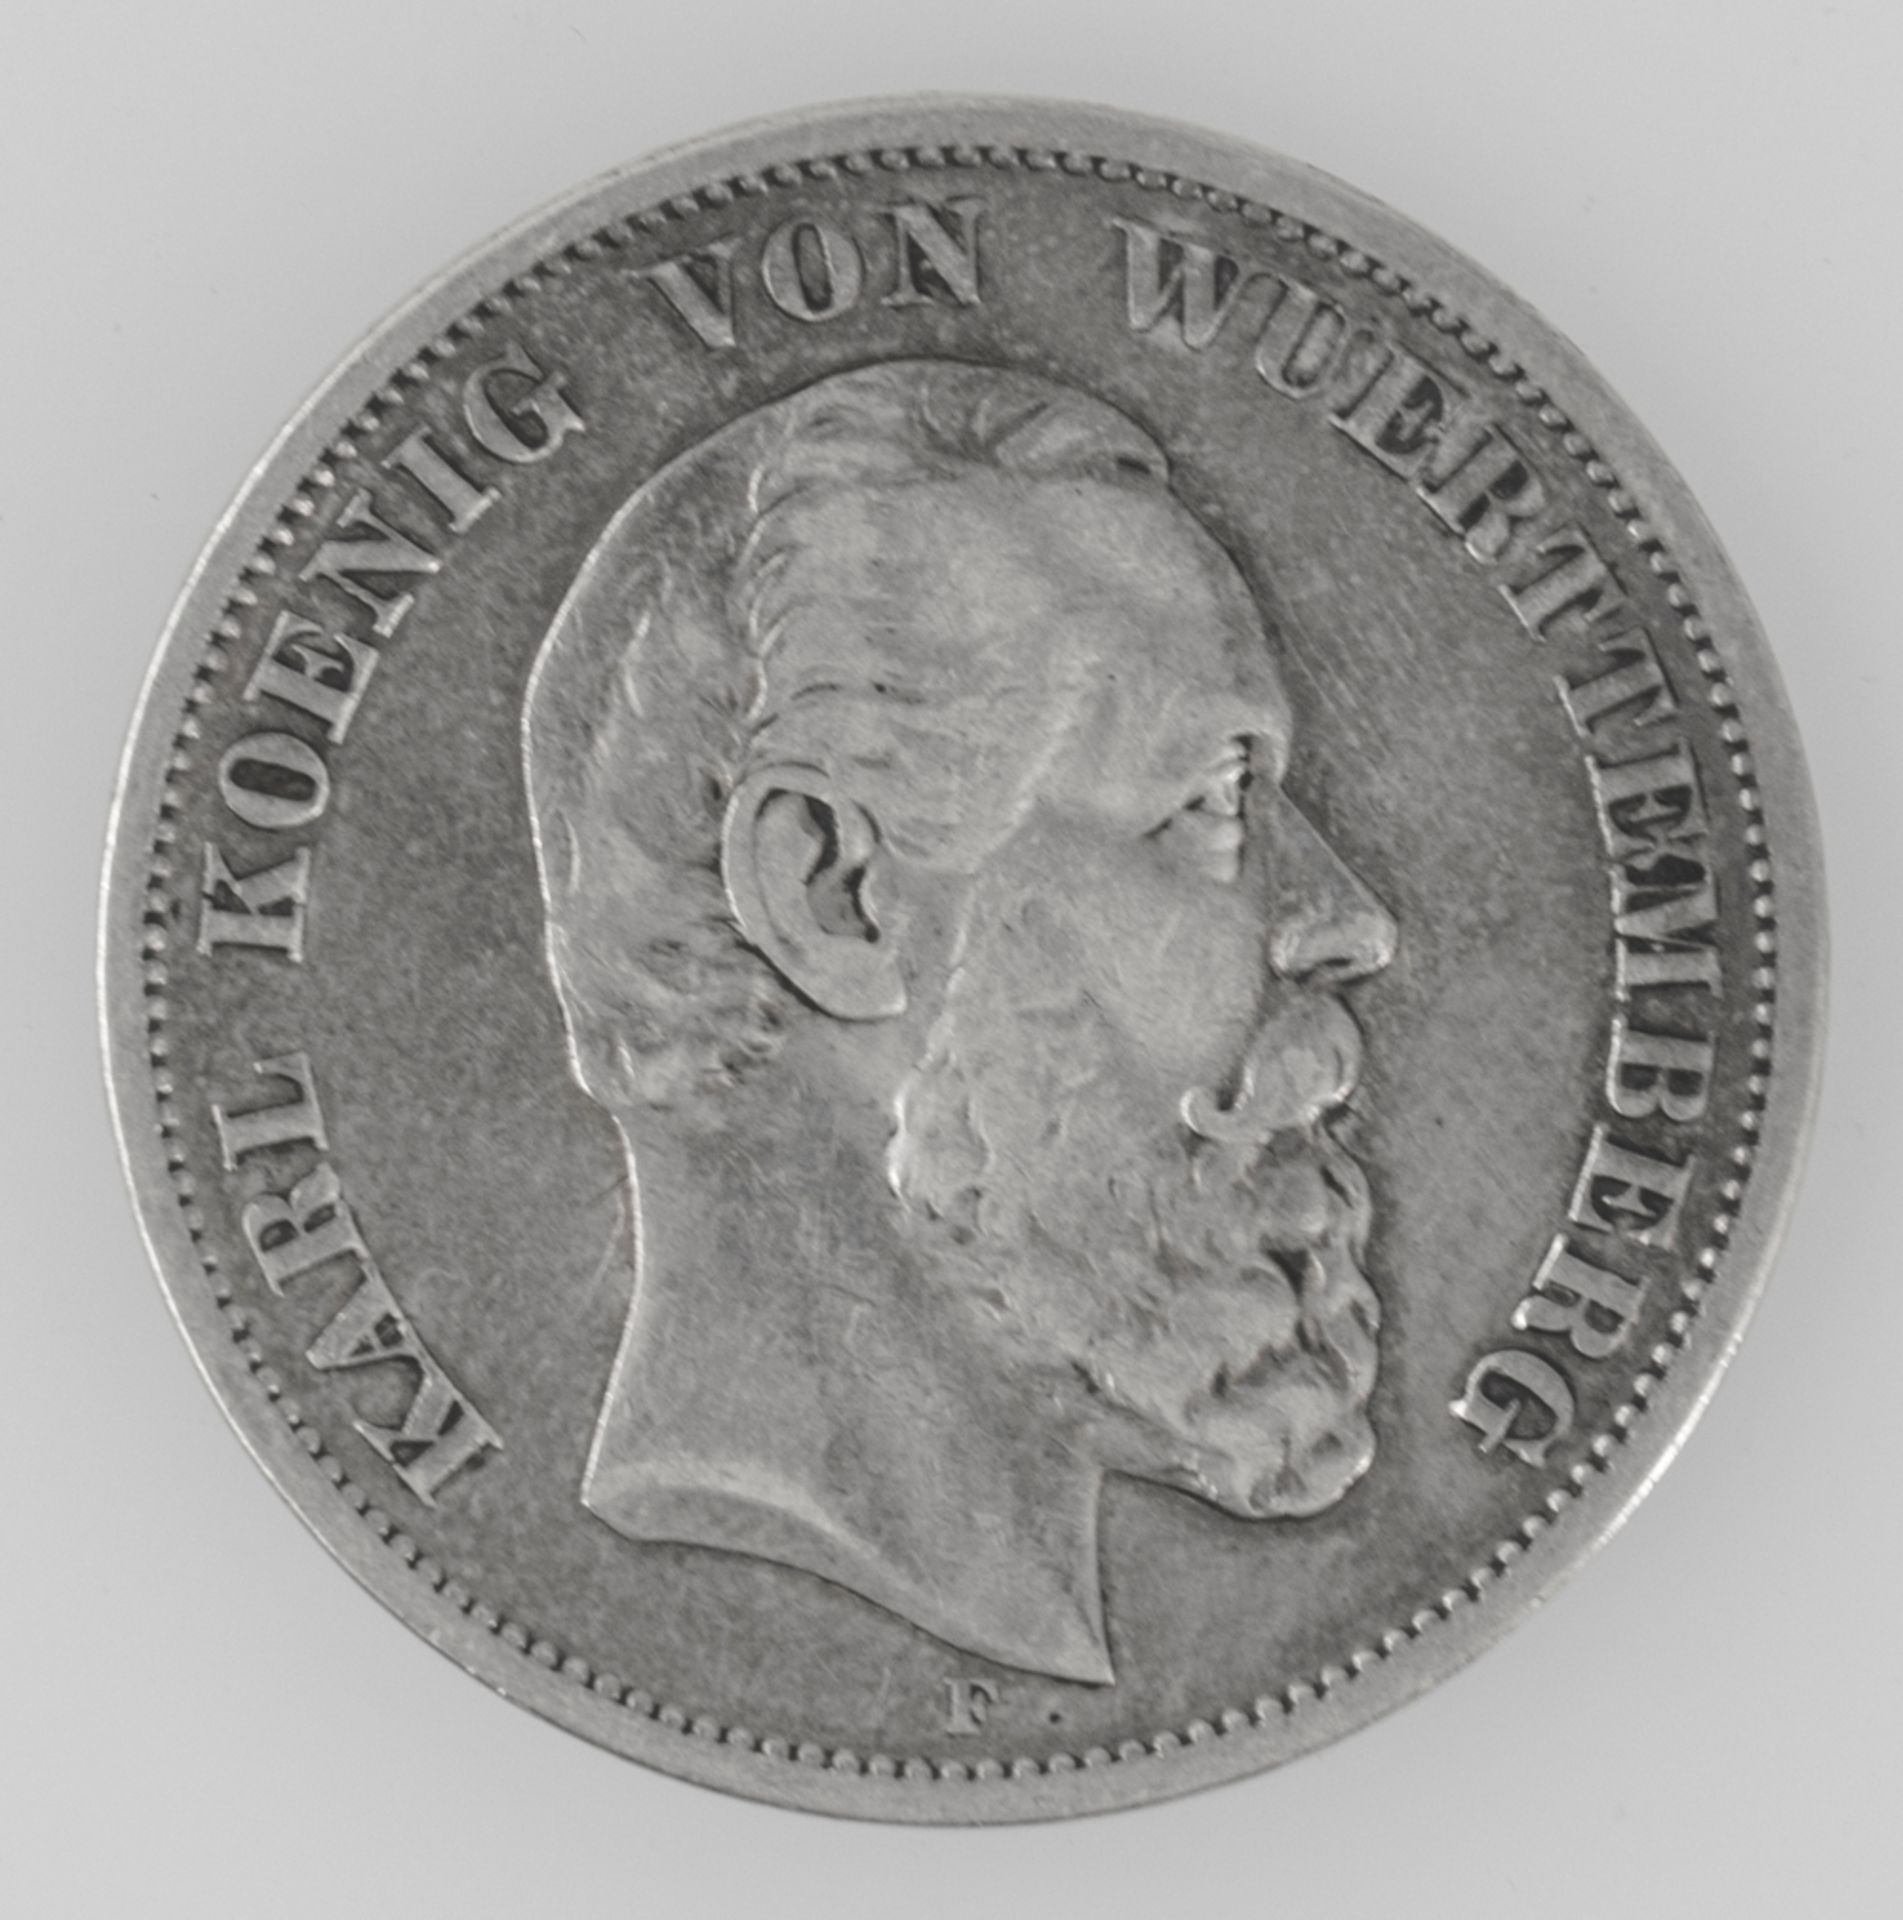 Deutsches Kaiserreich Baden 1876 F, 5 Mark - Silbermünze "Karl - Koenig von Baden". Jäger 173.